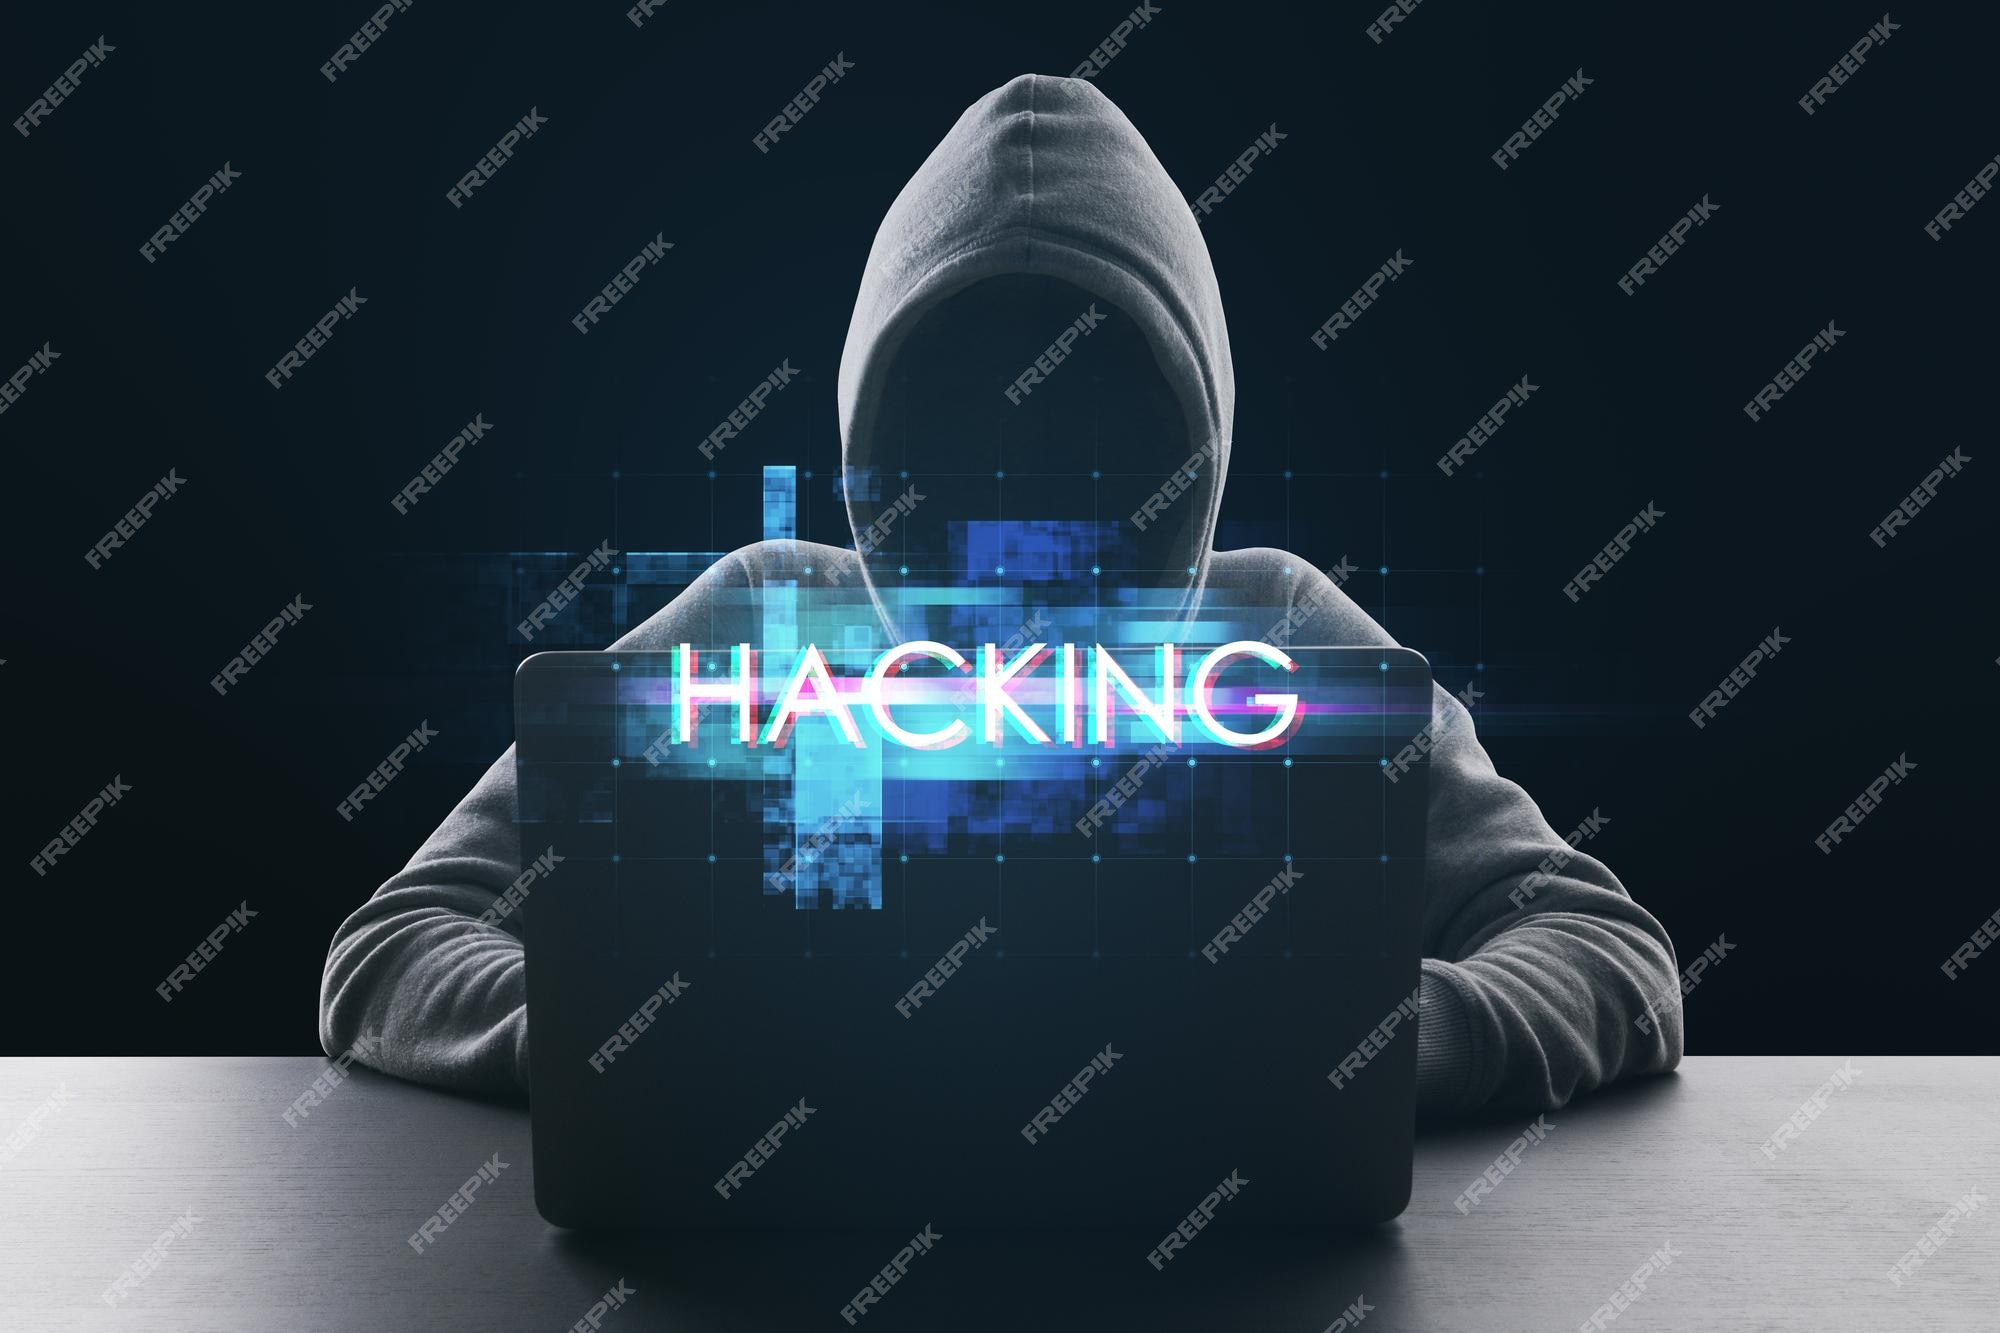 Nếu bạn muốn khám phá các kỹ thuật và bí mật được sử dụng bởi hacker, hãy xem hình ảnh này để hiểu rõ hơn về thế giới mã độc và lập trình nguy hiểm.